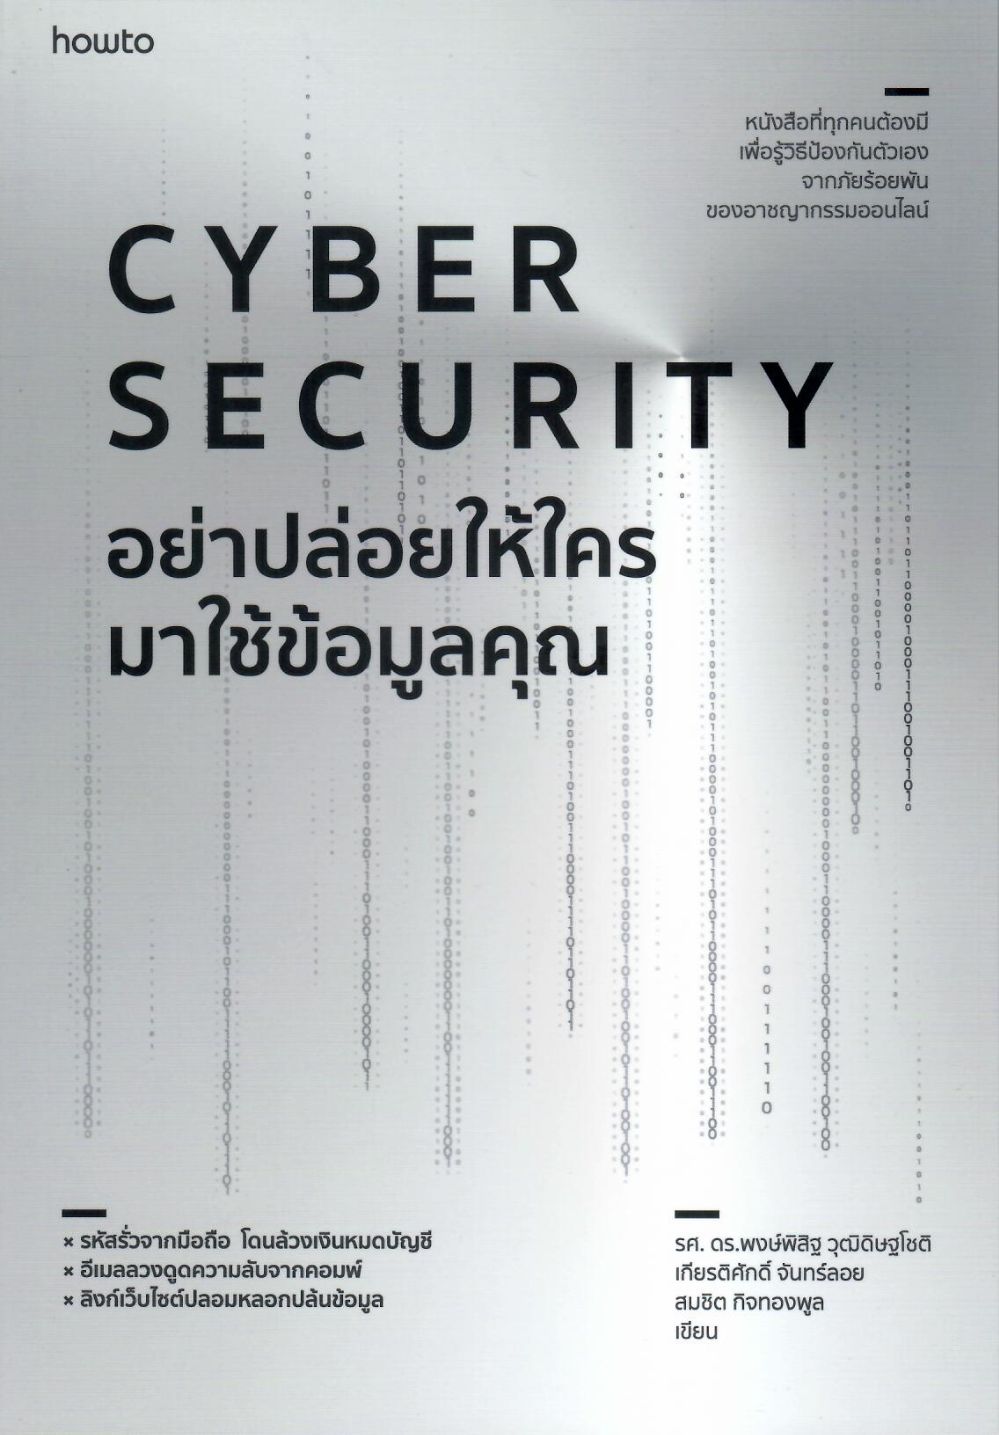 Cyber Security : อย่าปล่อยให้ใครมาใช้ข้อมูลคุณ/ พงษ์พิสิฐ วุฒิดิษฐโชติ